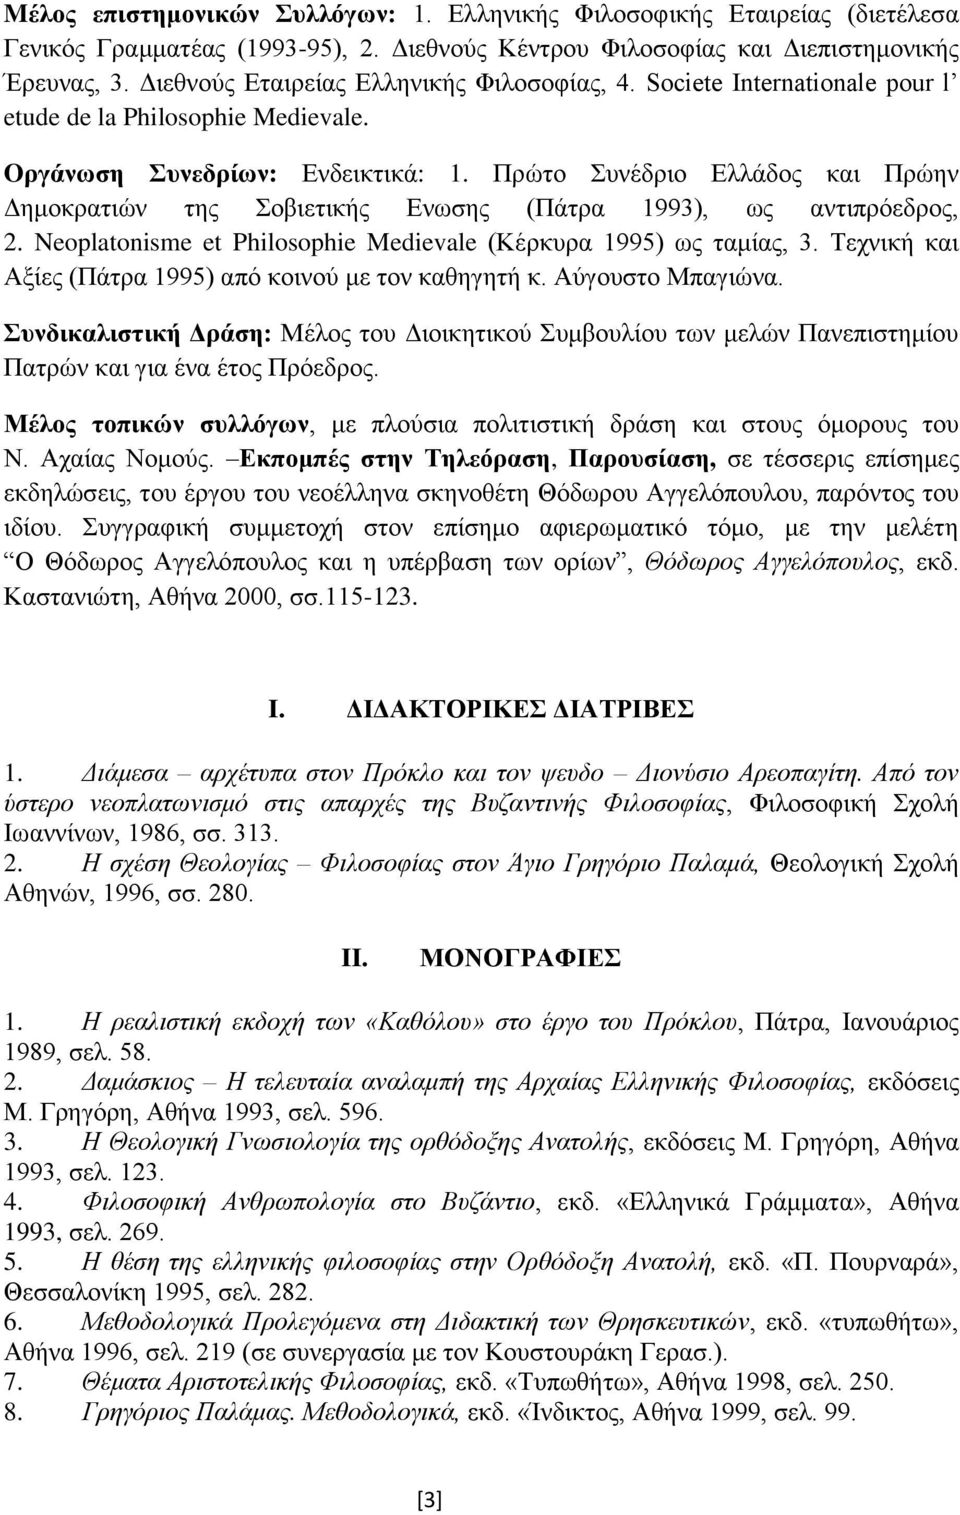 Πρώτο Συνέδριο Ελλάδος και Πρώην Δημοκρατιών της Σοβιετικής Ενωσης (Πάτρα 1993), ως αντιπρόεδρος, 2. Neoplatonisme et Philosophie Medievale (Κέρκυρα 1995) ως ταμίας, 3.